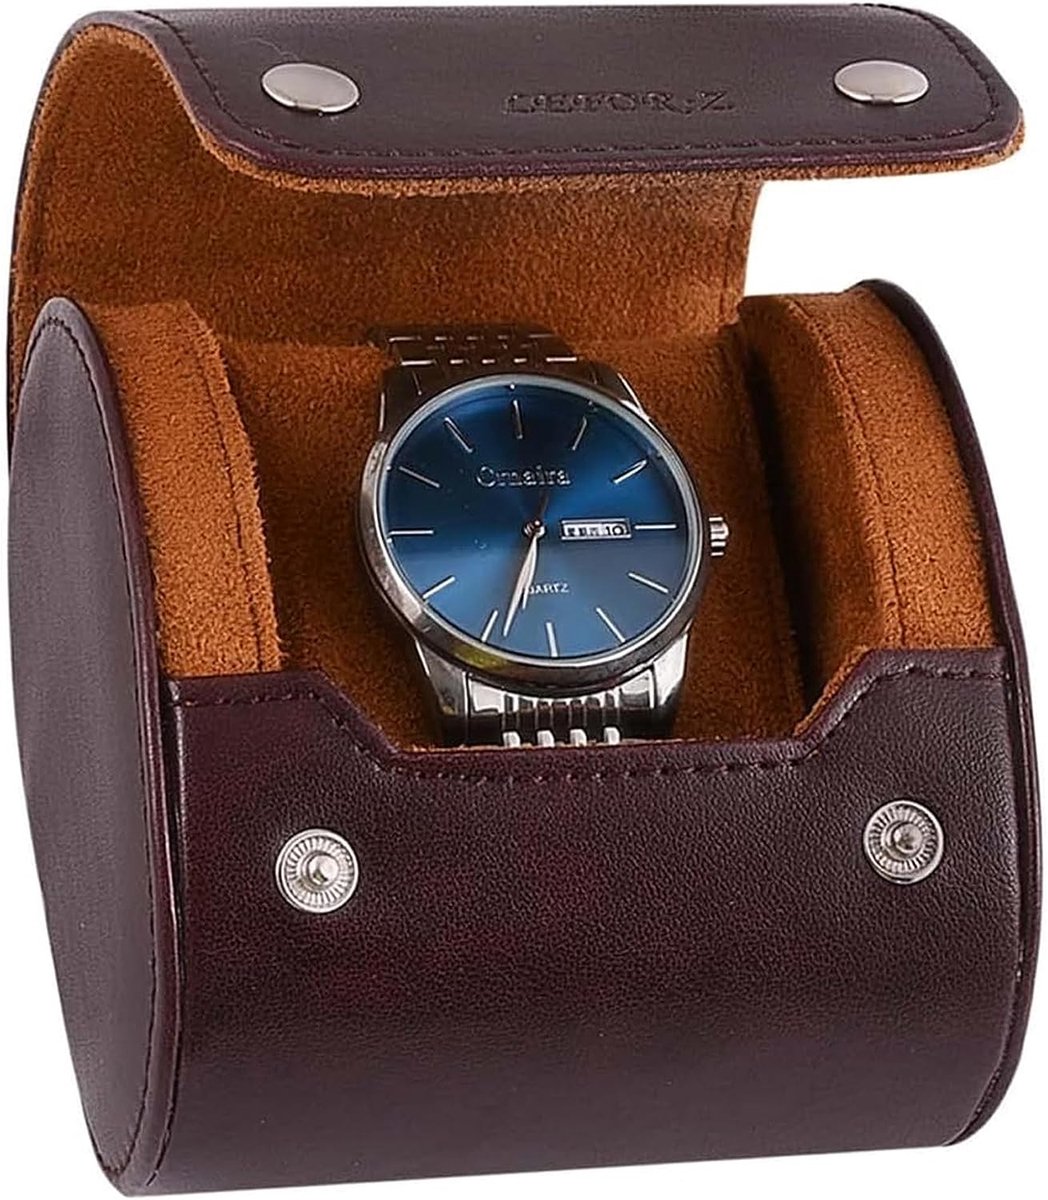 Watch Box Organizer Watch Roll Travel Case Single Watch Case voor mannen horloge display opbergdoos draagbare horlogerol PU lederen horlogedoos (bruin)